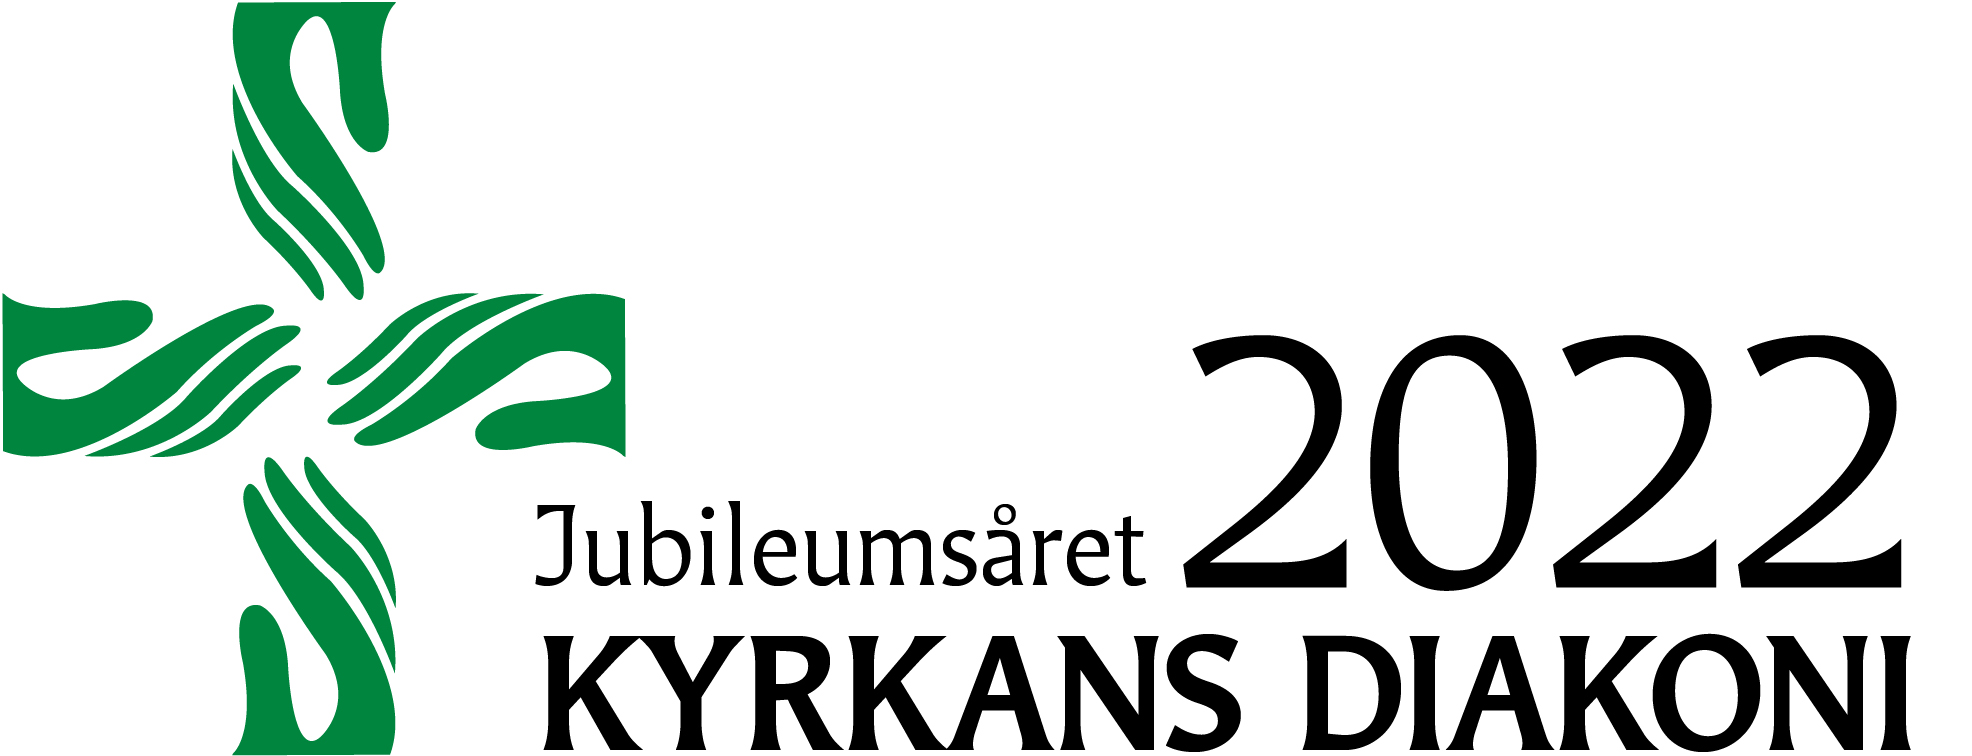 Diakonins logo för 150 års jubileumsåret